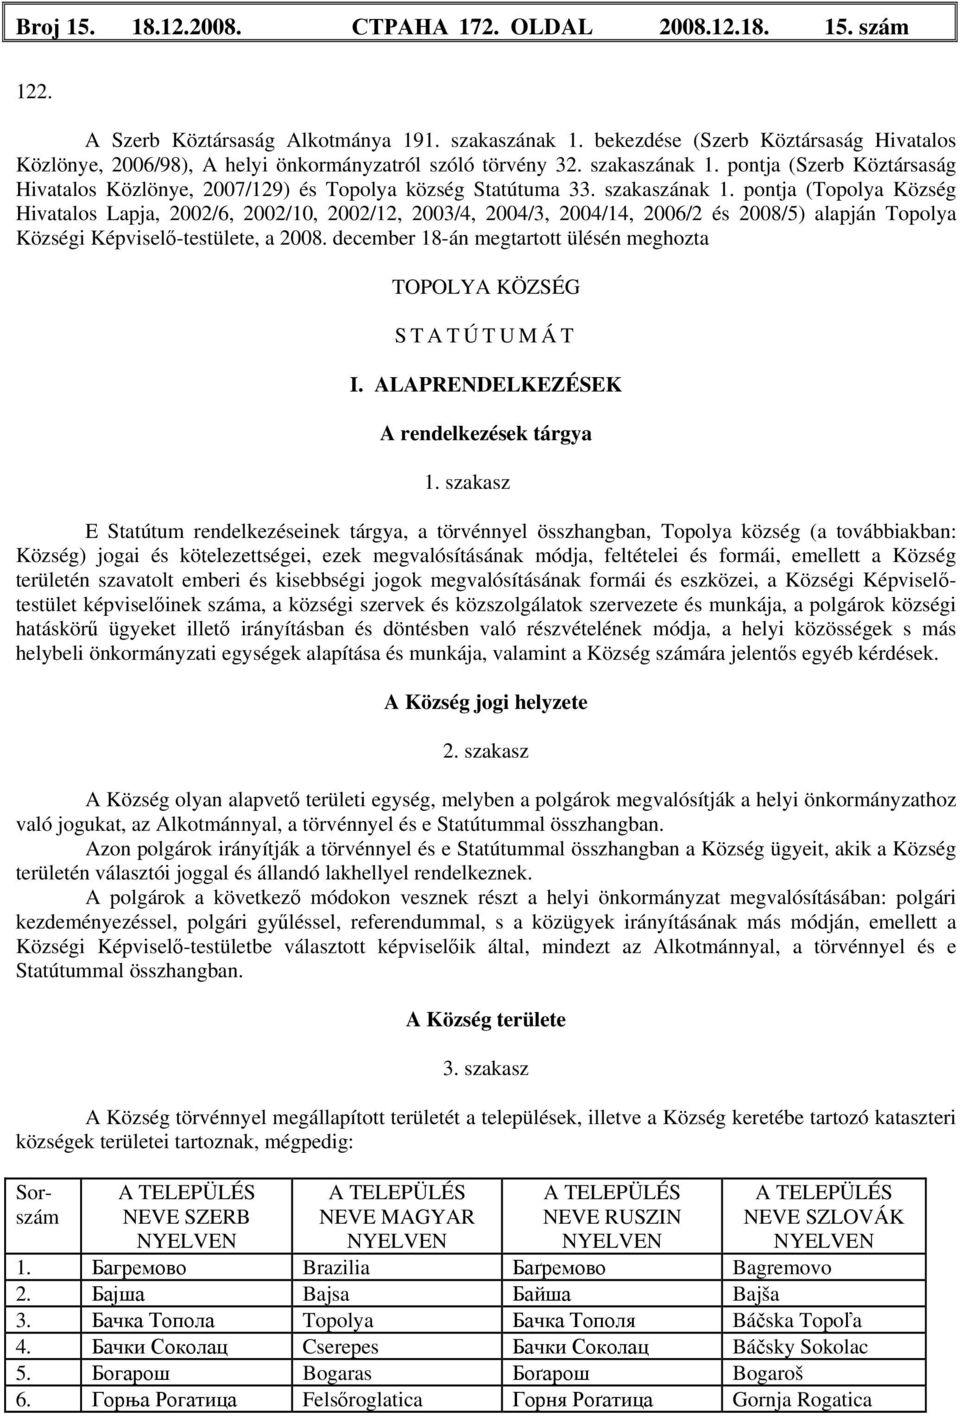 pontja (Szerb Köztársaság Hivatalos Közlönye, 2007/129) és Topolya község Statútuma 33. szakaszának 1.